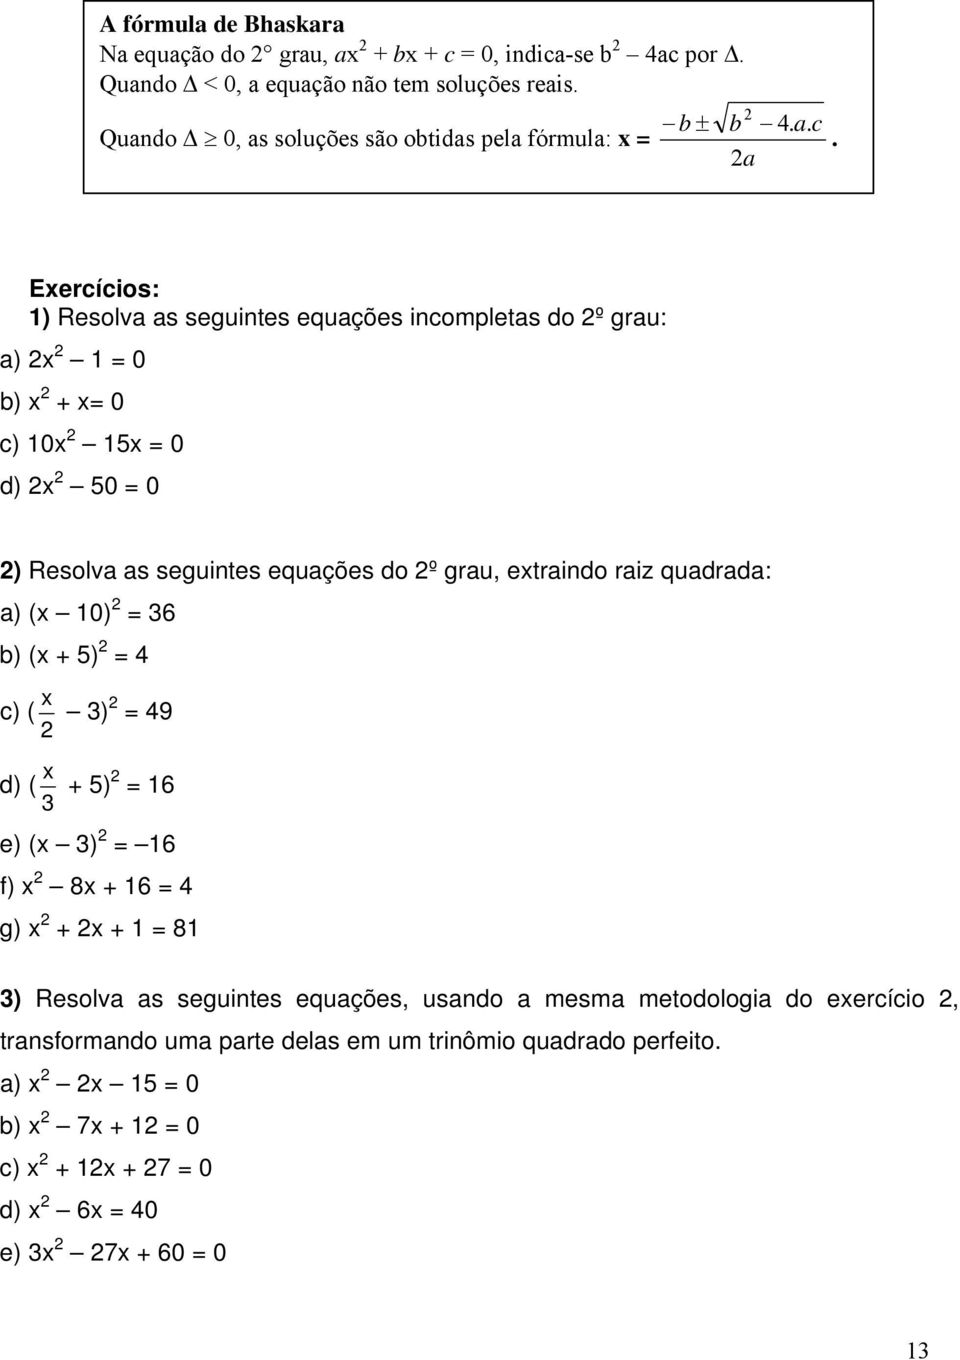 Eercícios: ) Resolv s seguintes equções incomplets do º gru: ) = 0 ) + = 0 c) 0 5 = 0 d) 50 = 0 ) Resolv s seguintes equções do º gru, etrindo